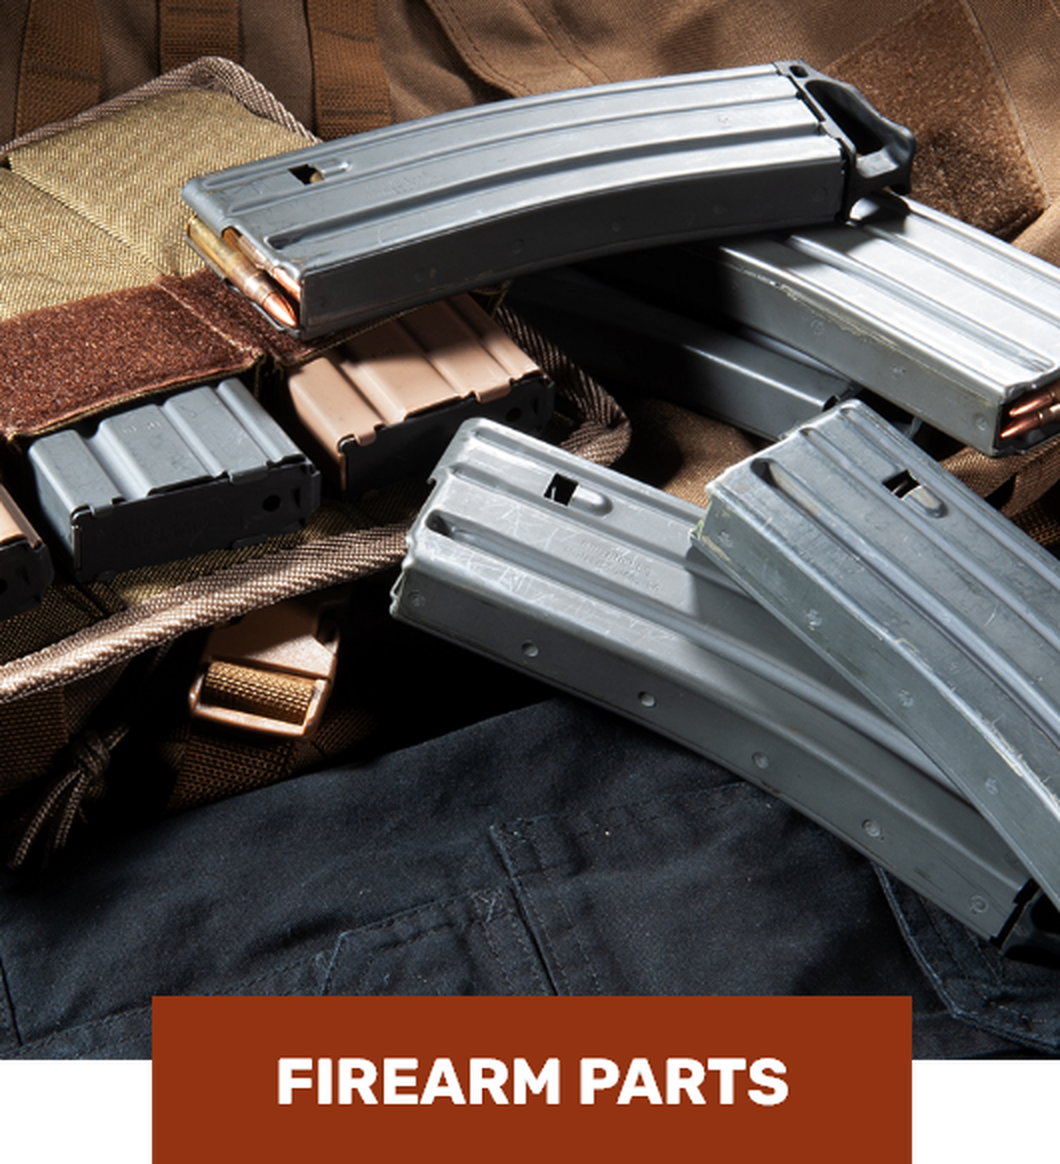 Firearm parts